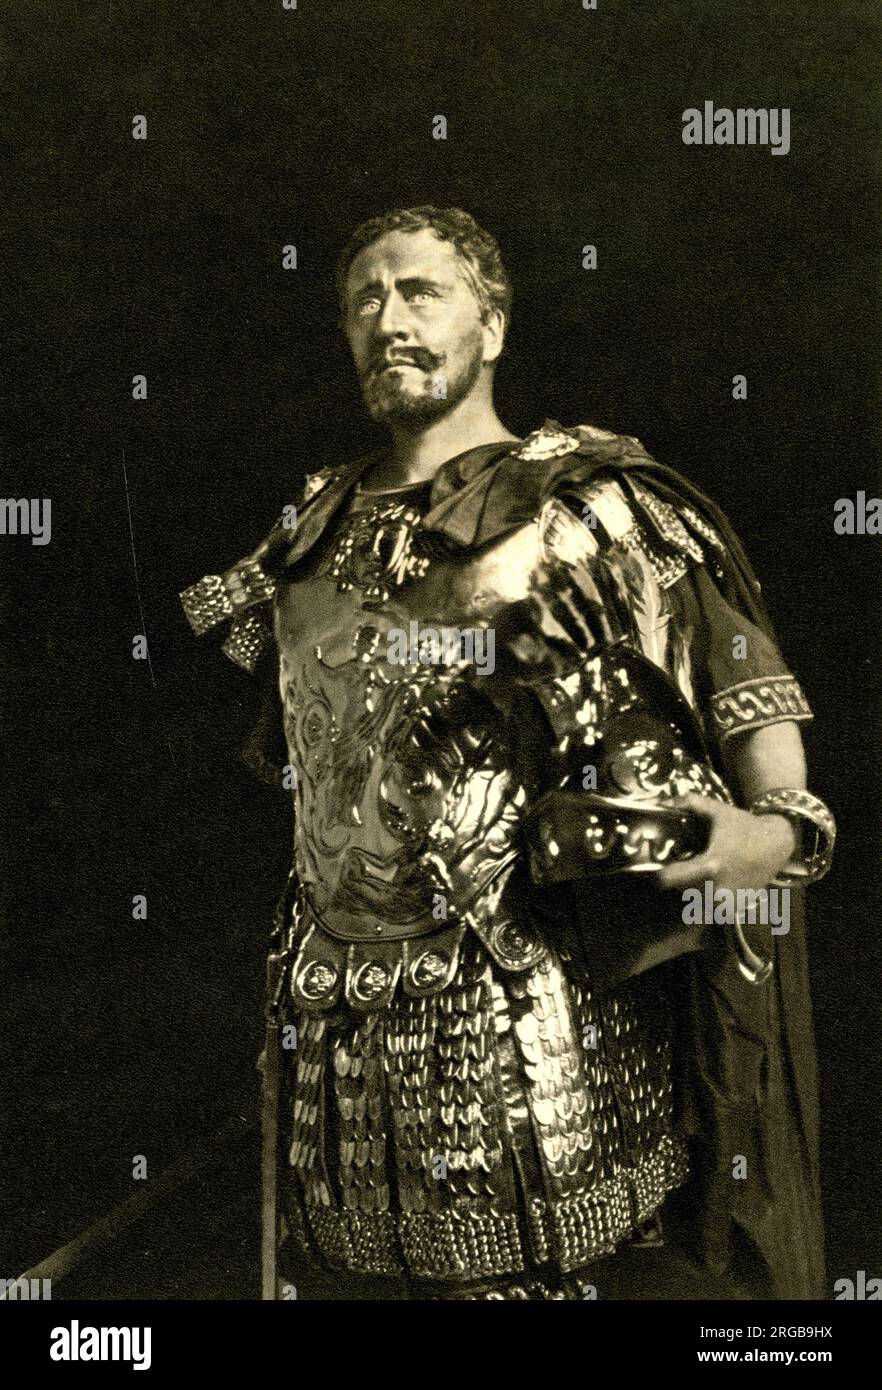 Herbert Beerbohm Tree, actor inglés y director de teatro, como Antony en Antony y Cleopatra de Shakespeare. Foto de stock